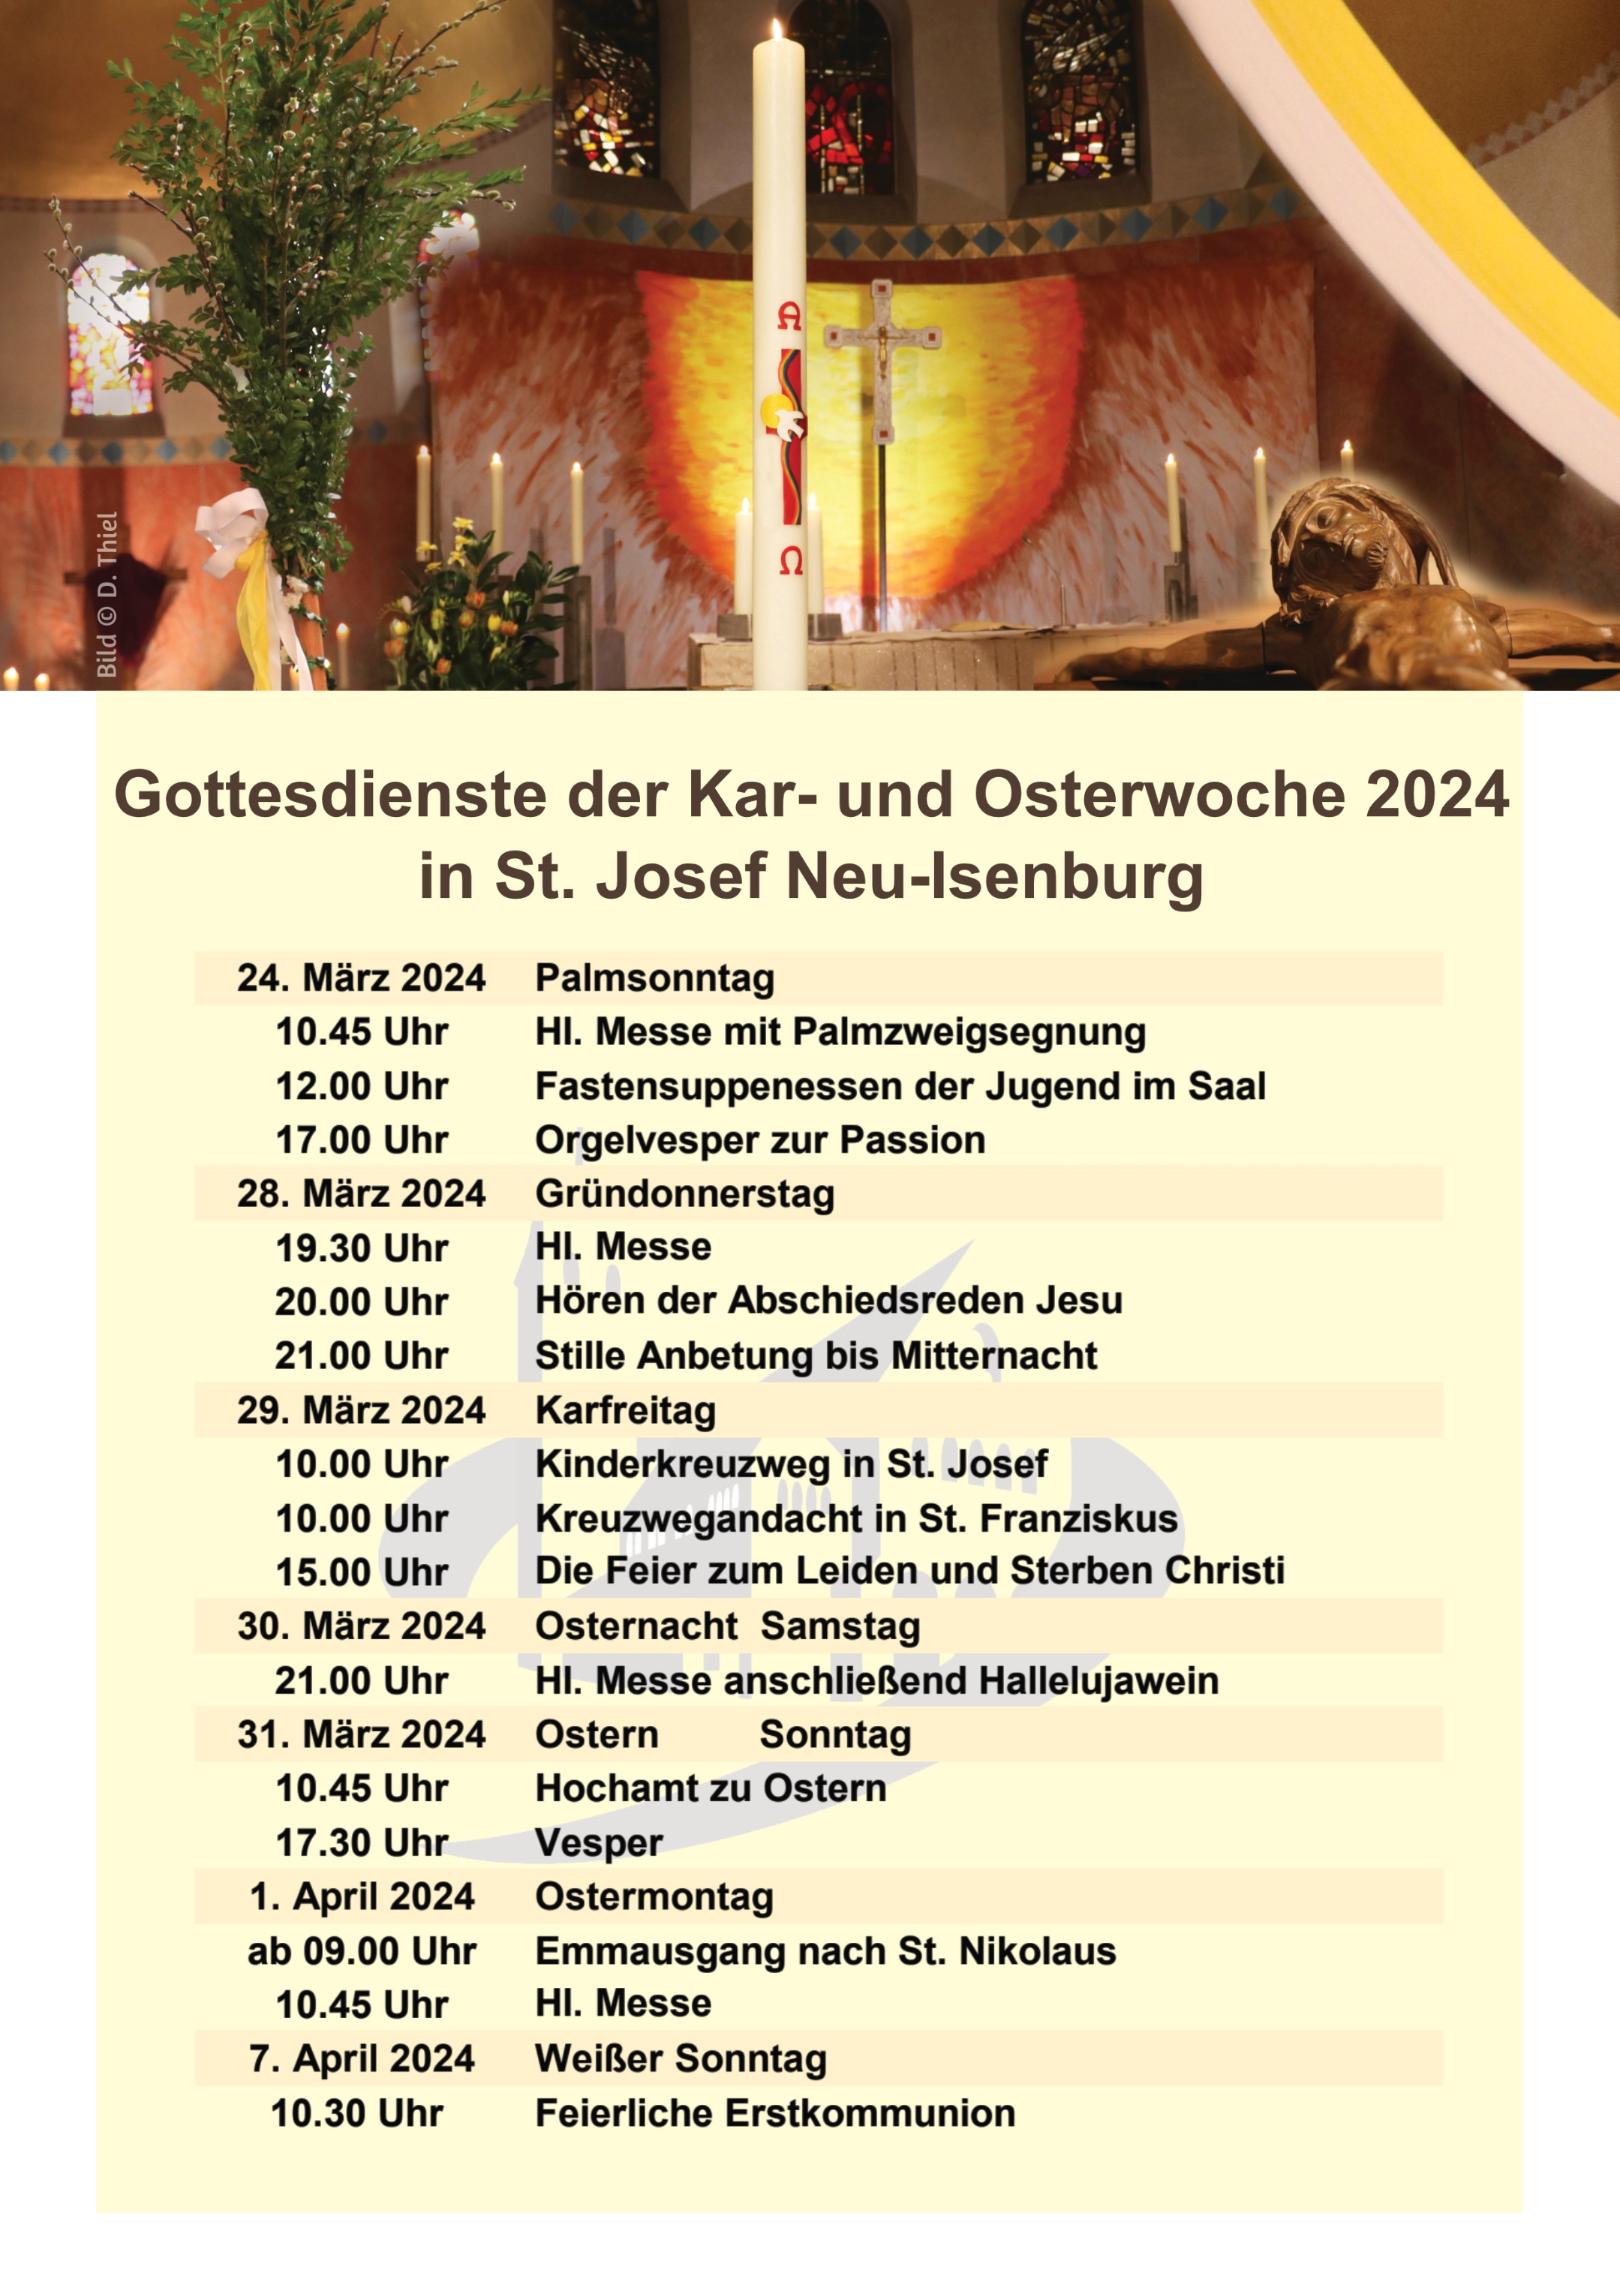 Kar- und Osterwoche in St. Josef 2024 (c) D. Thiel